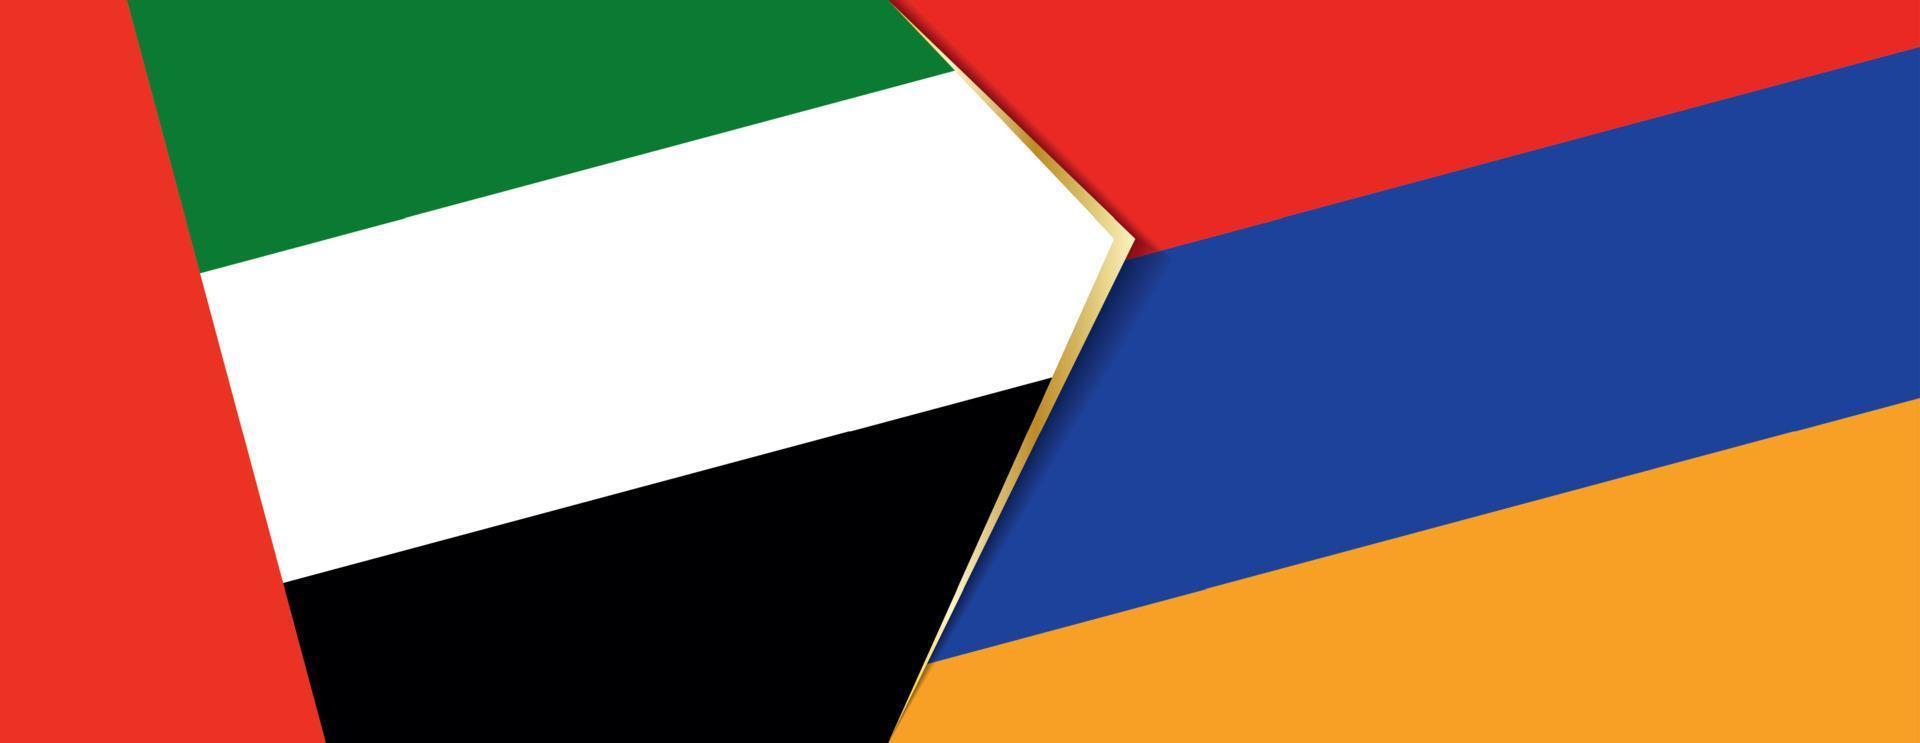 unido árabe emiratos y Armenia banderas, dos vector banderas